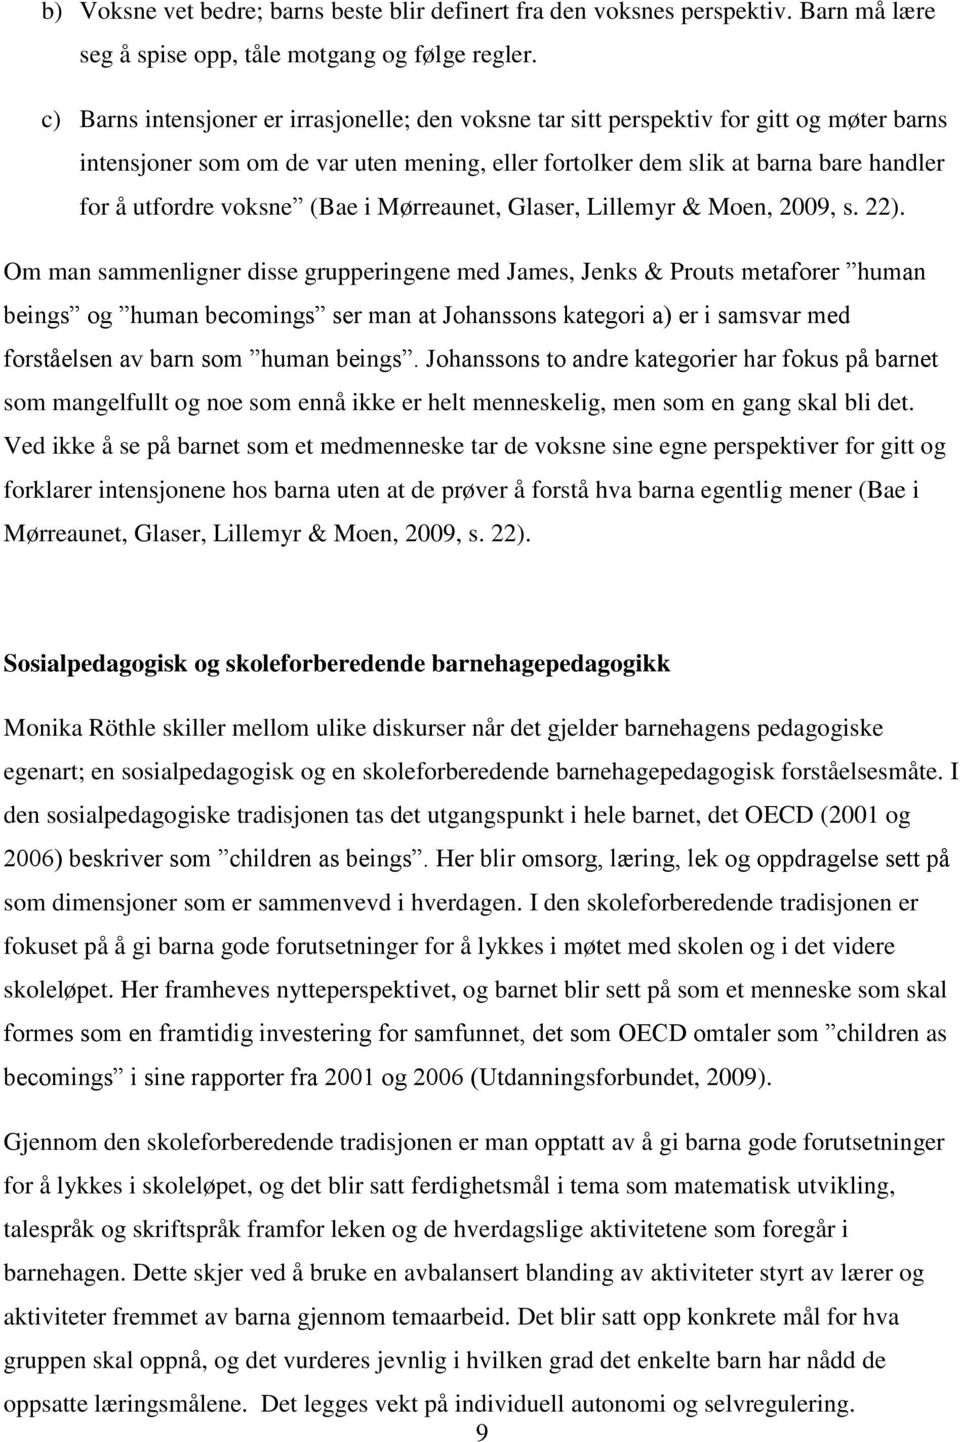 voksne (Bae i Mørreaunet, Glaser, Lillemyr & Moen, 2009, s. 22).